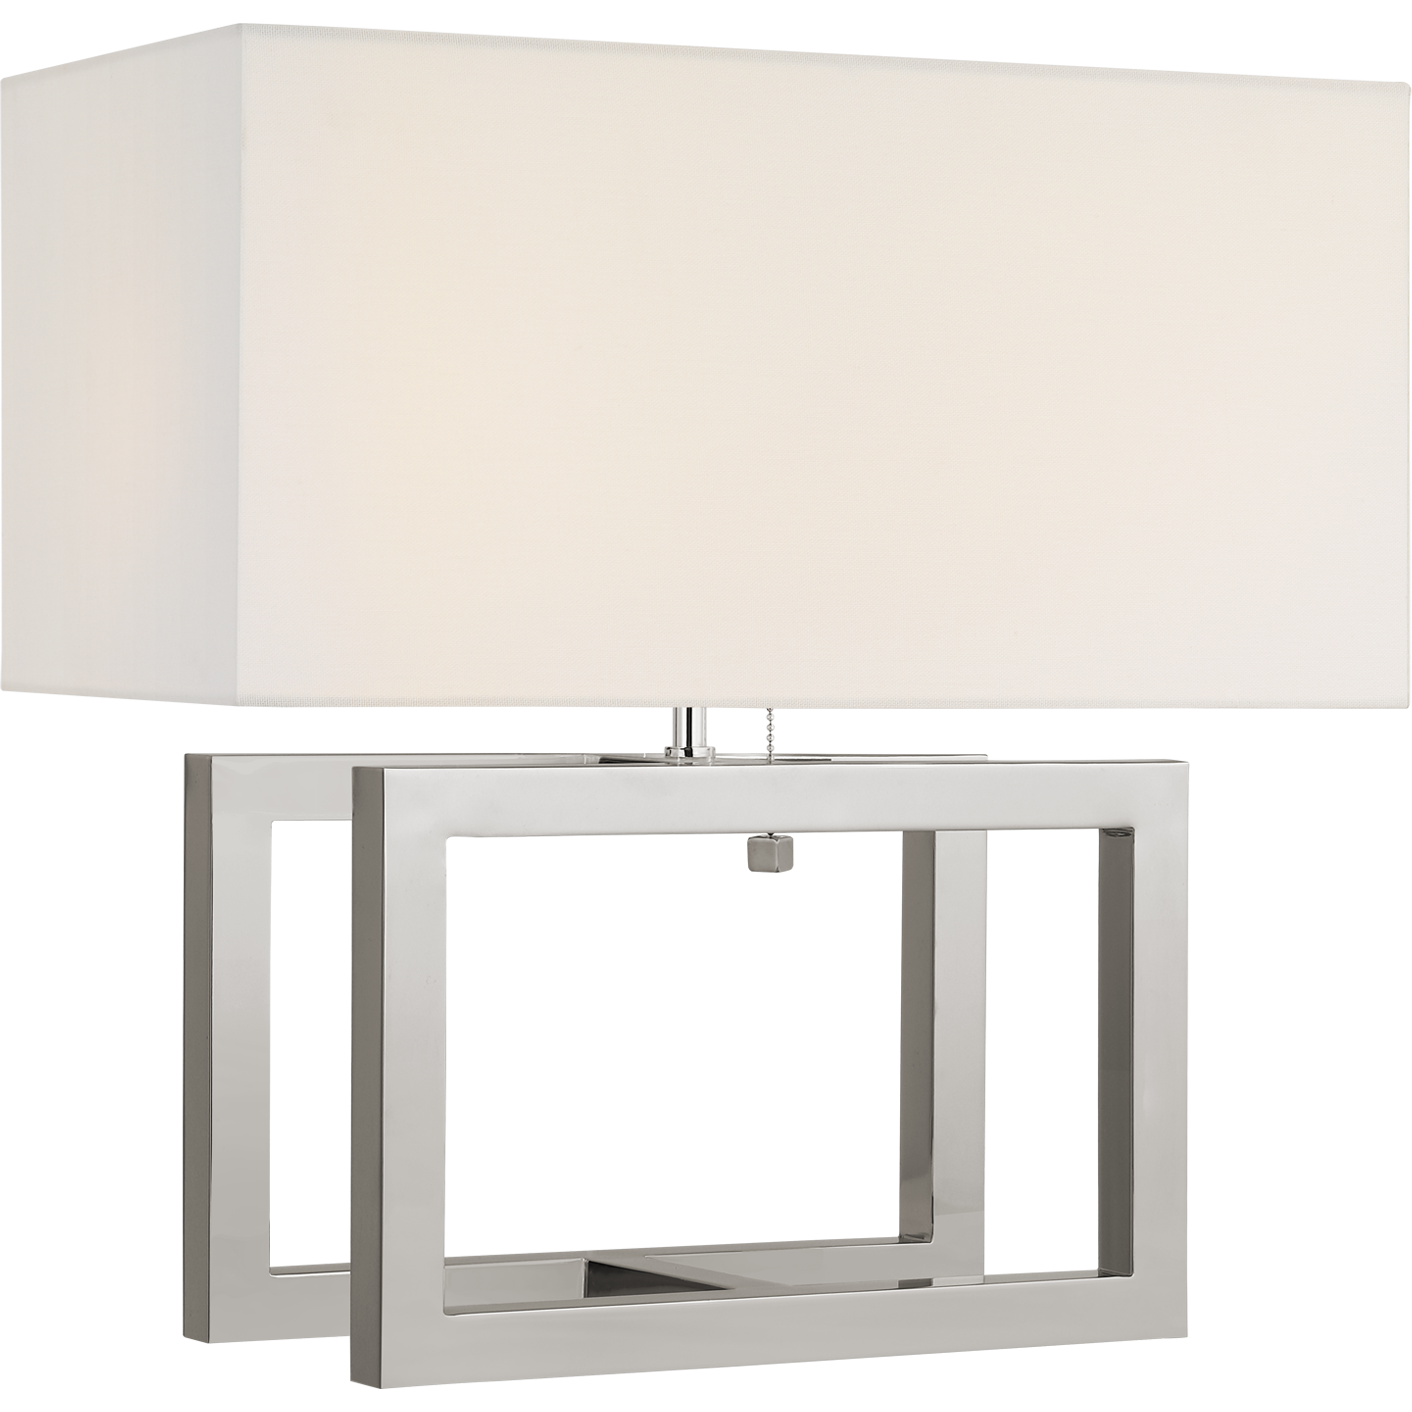 Galerie Medium Table Lamp